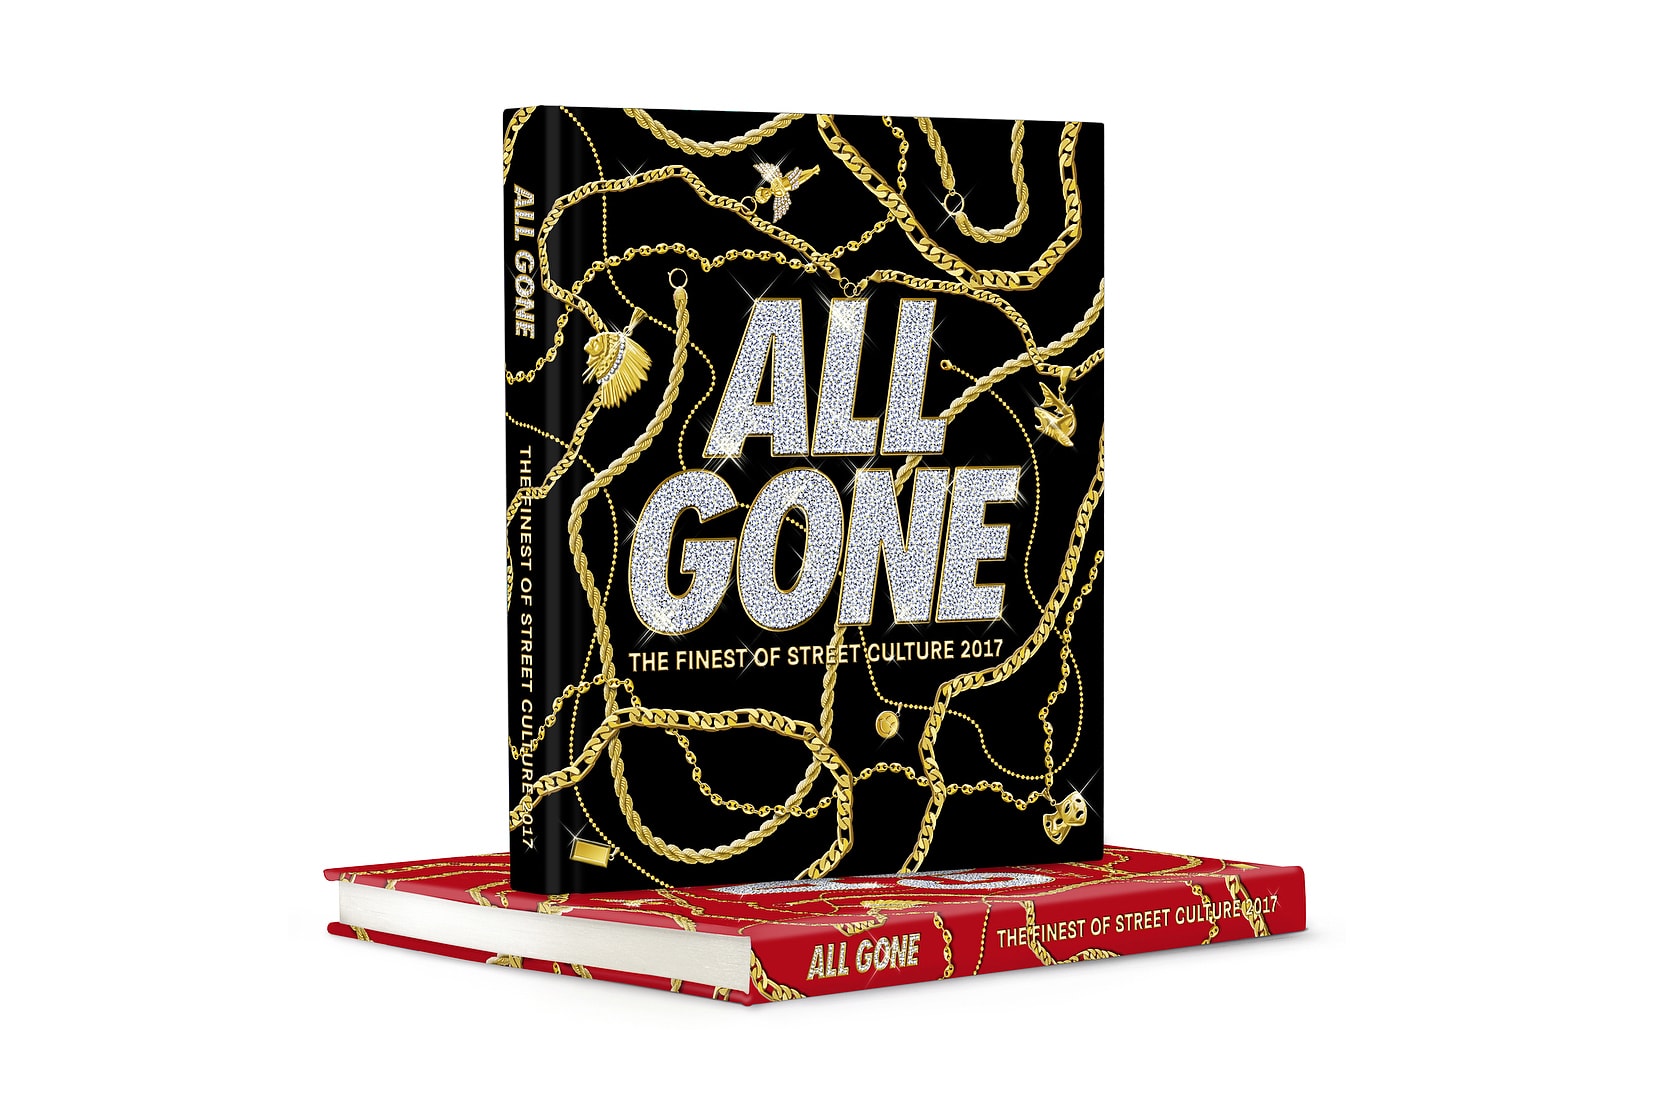 年度街頭聖經《All Gone 2017》正式發佈